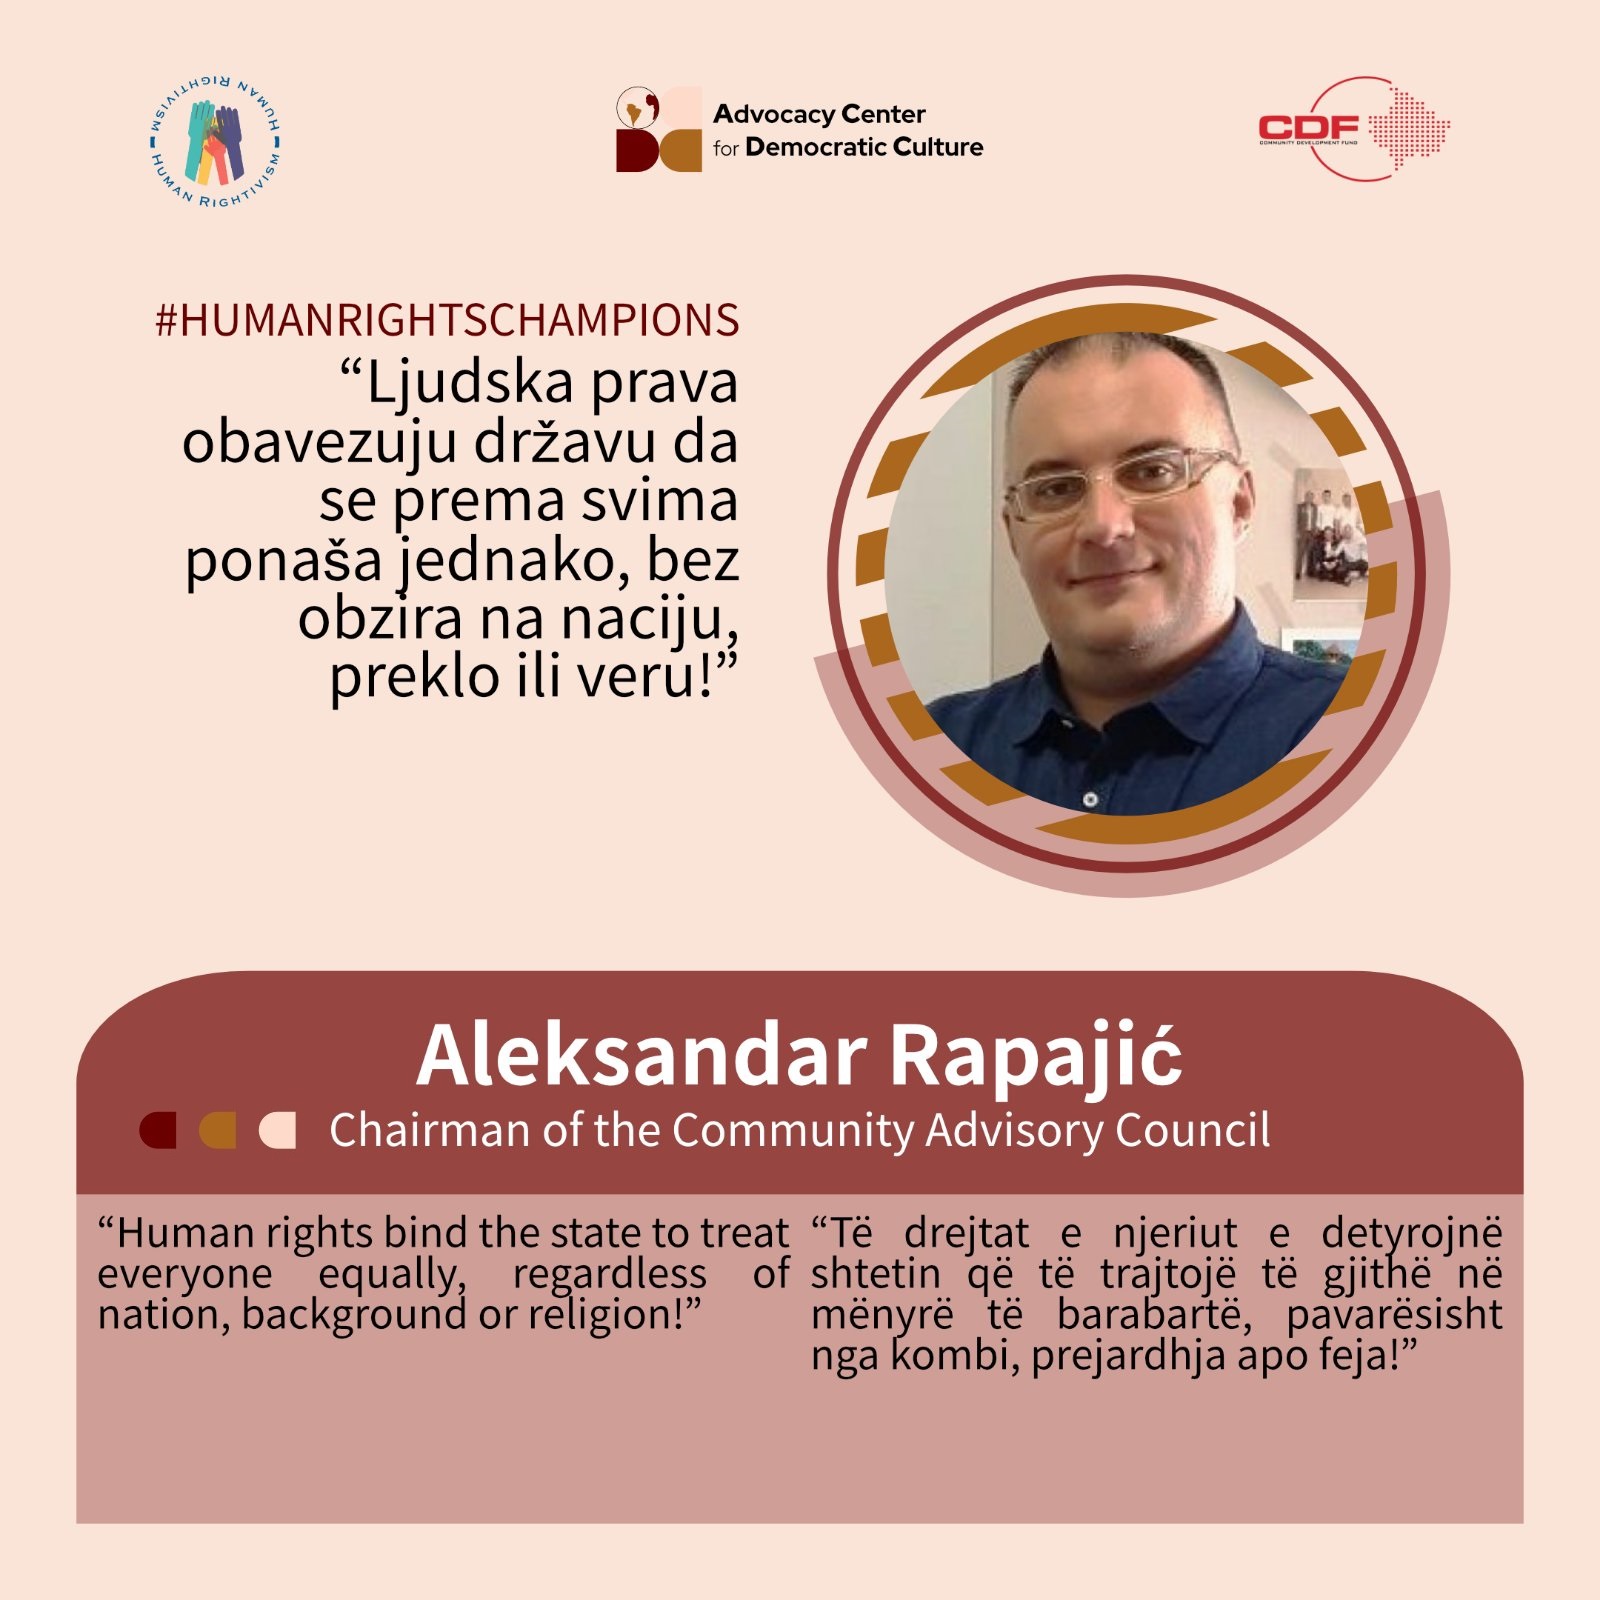 kampanja-promocije-ljudskih-prava-humanrightschampions-aleksandar-rapajic